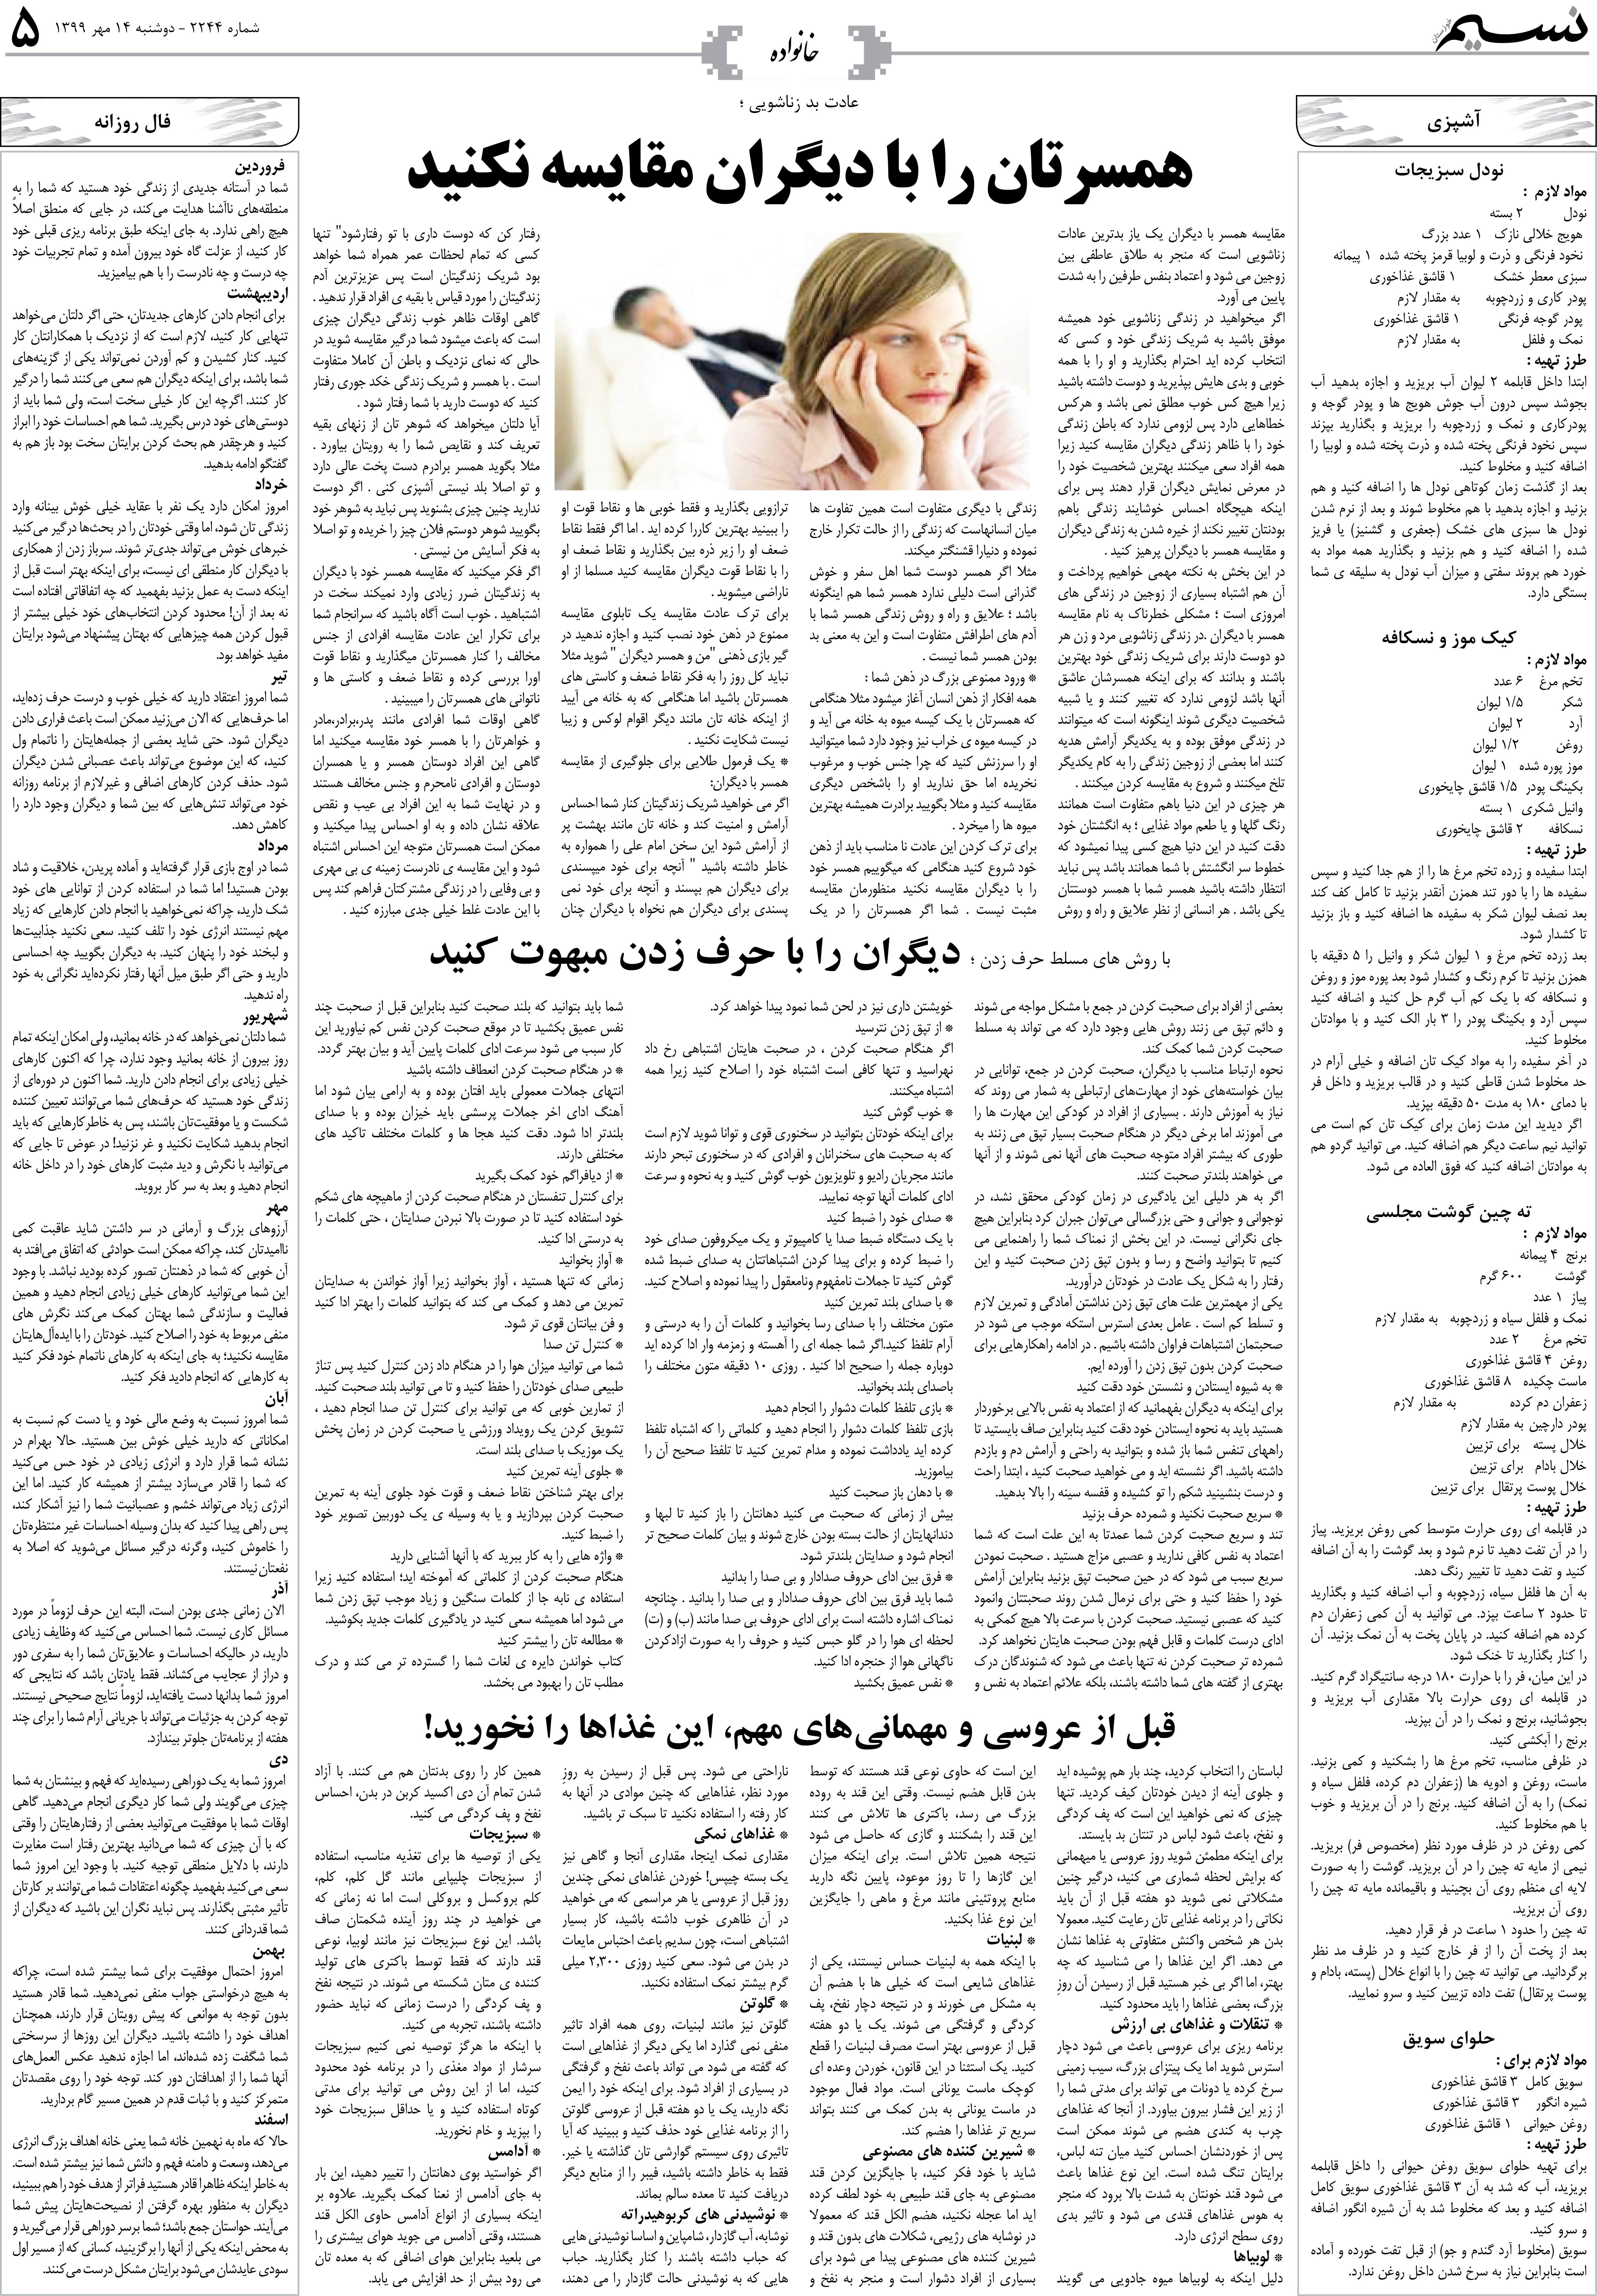 صفحه خانواده روزنامه نسیم شماره 2244